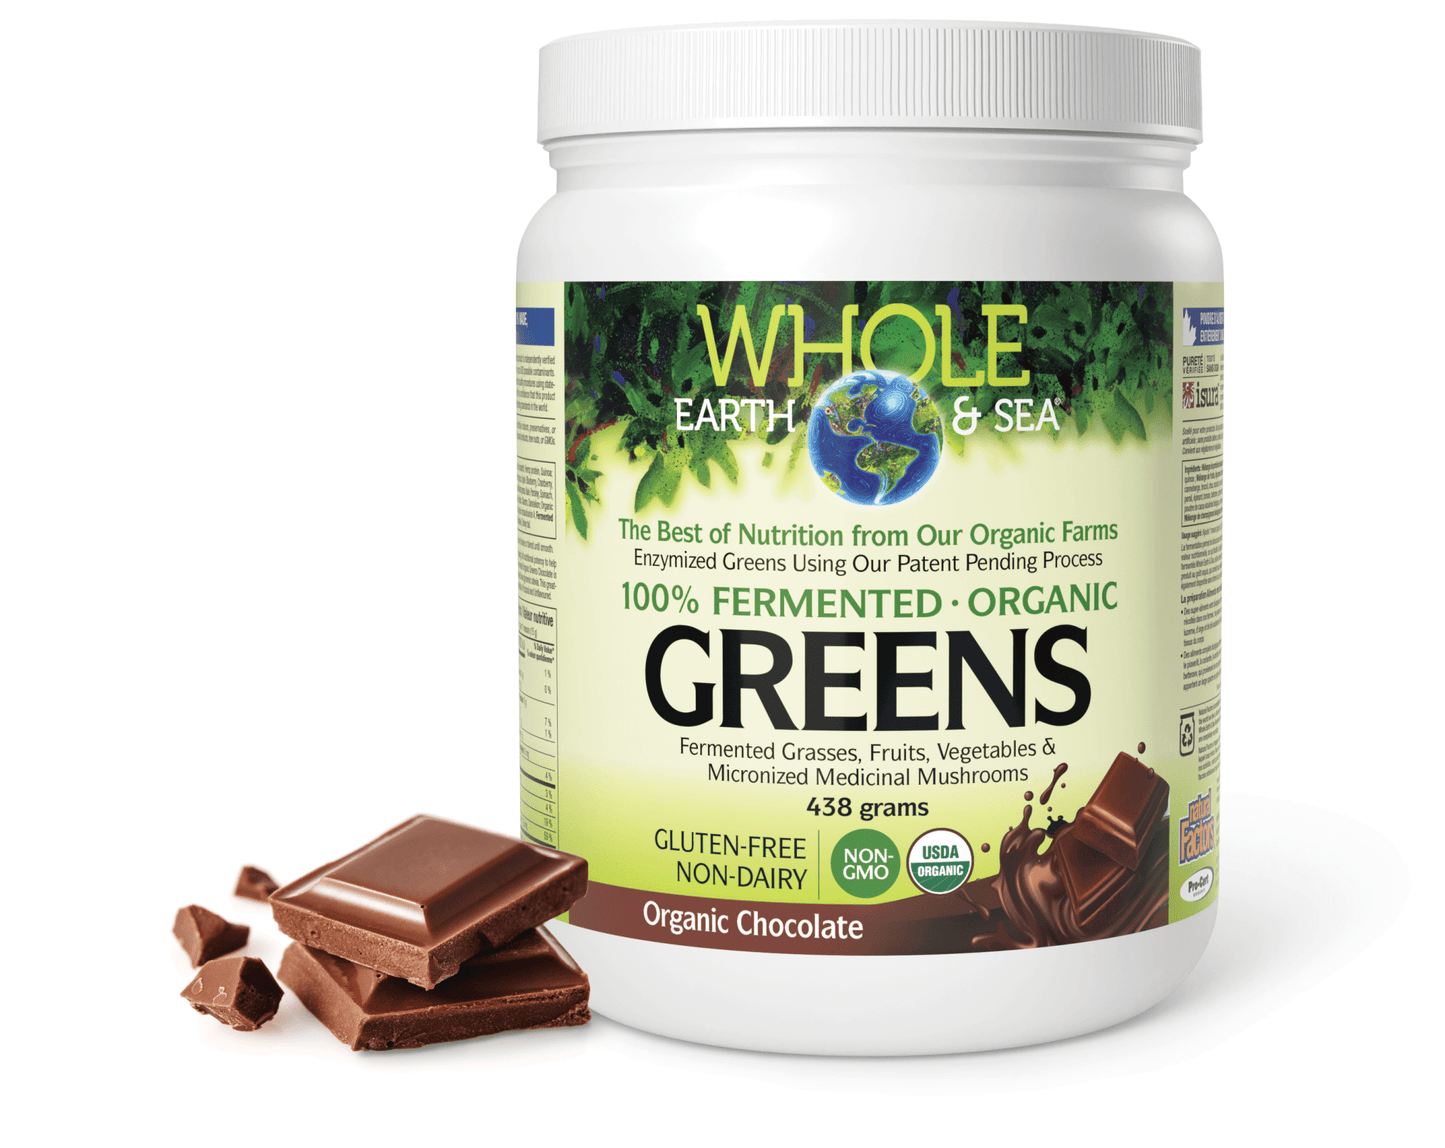 Fermented Organic Greens, Organic Chocolate, Whole Earth & Sea, Whole Earth & Sea®|v|image|35524